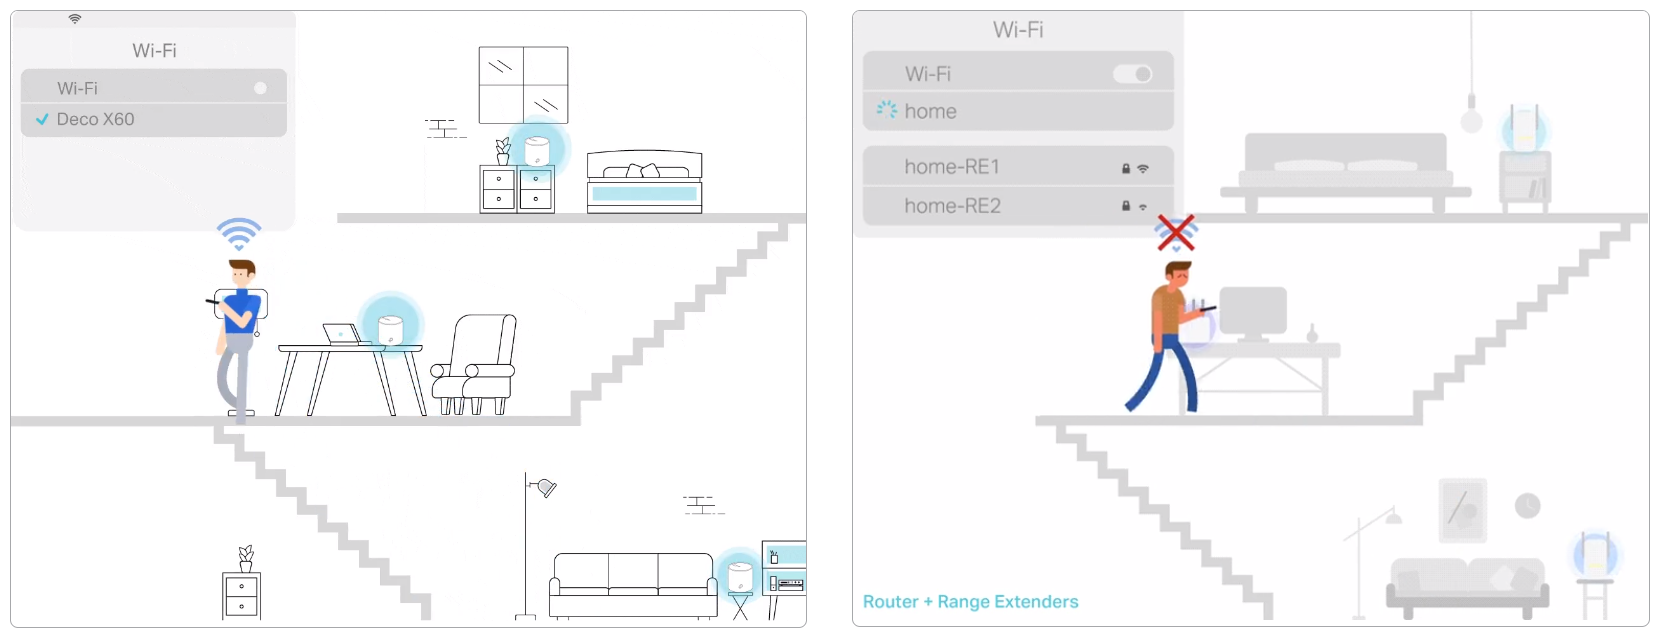 Mesh Setup Idea & TP-Link M4 vs. Xiaomi AX3000 vs. other? : r/HomeNetworking